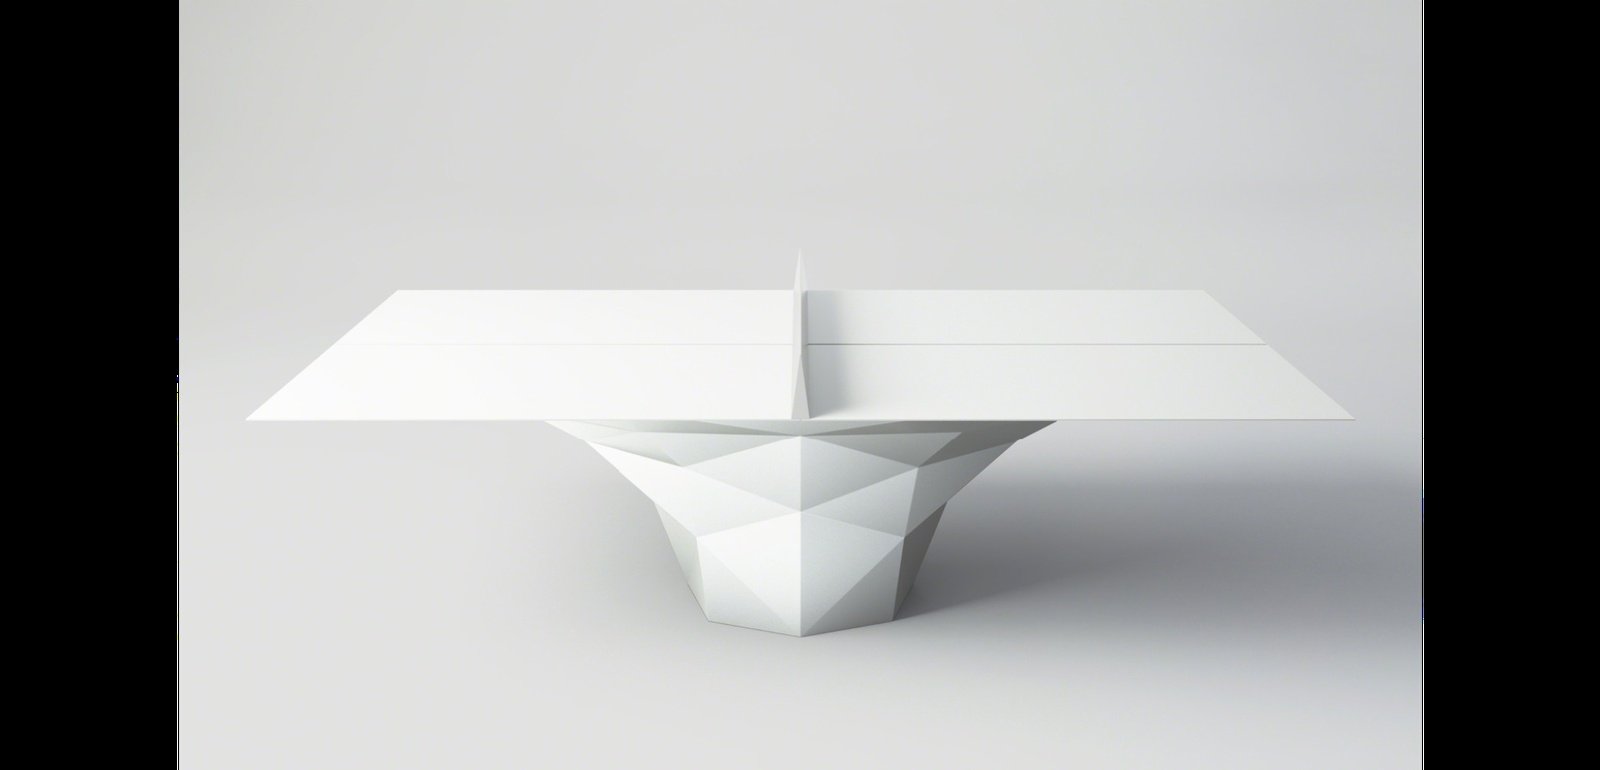 Elegantní design stolu od designéra Janne Kyttanena, zdroj: Artsy